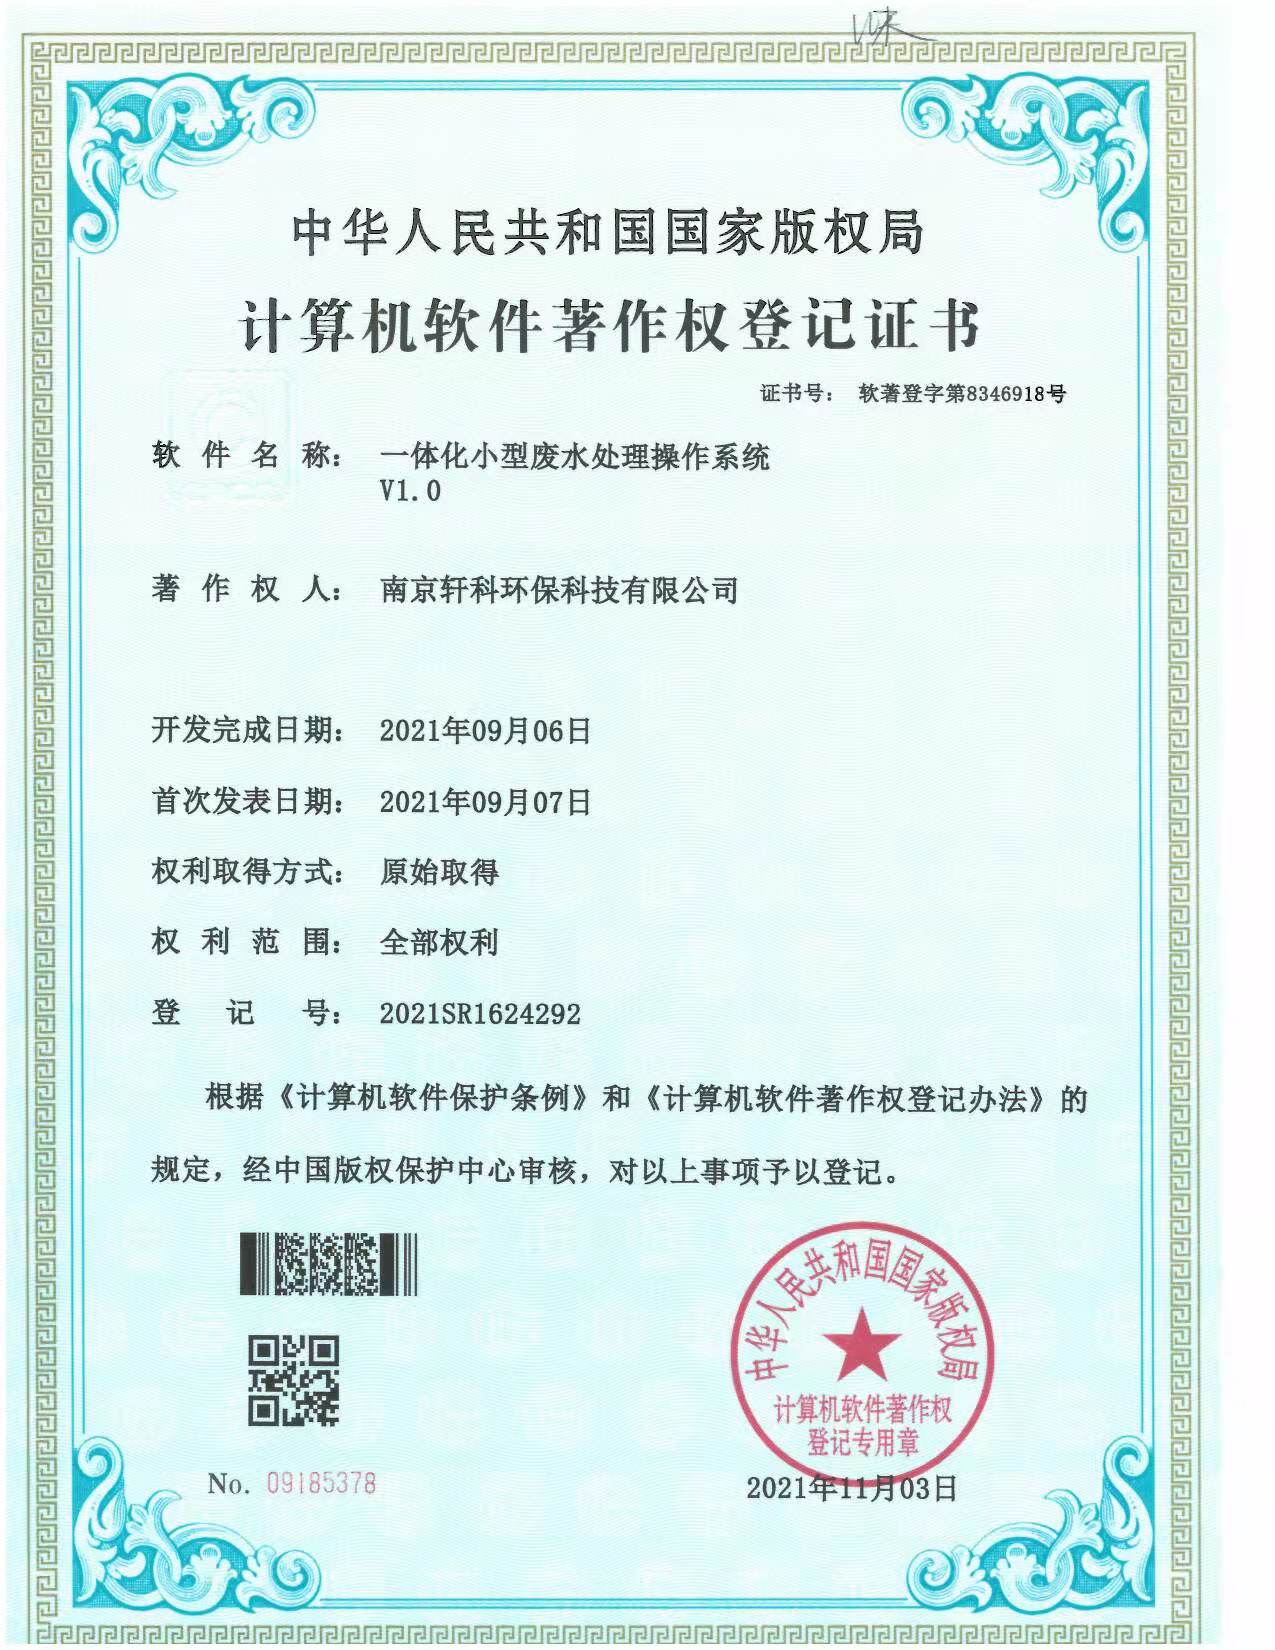 广州小型一体化废水处理系统软件著作权证书